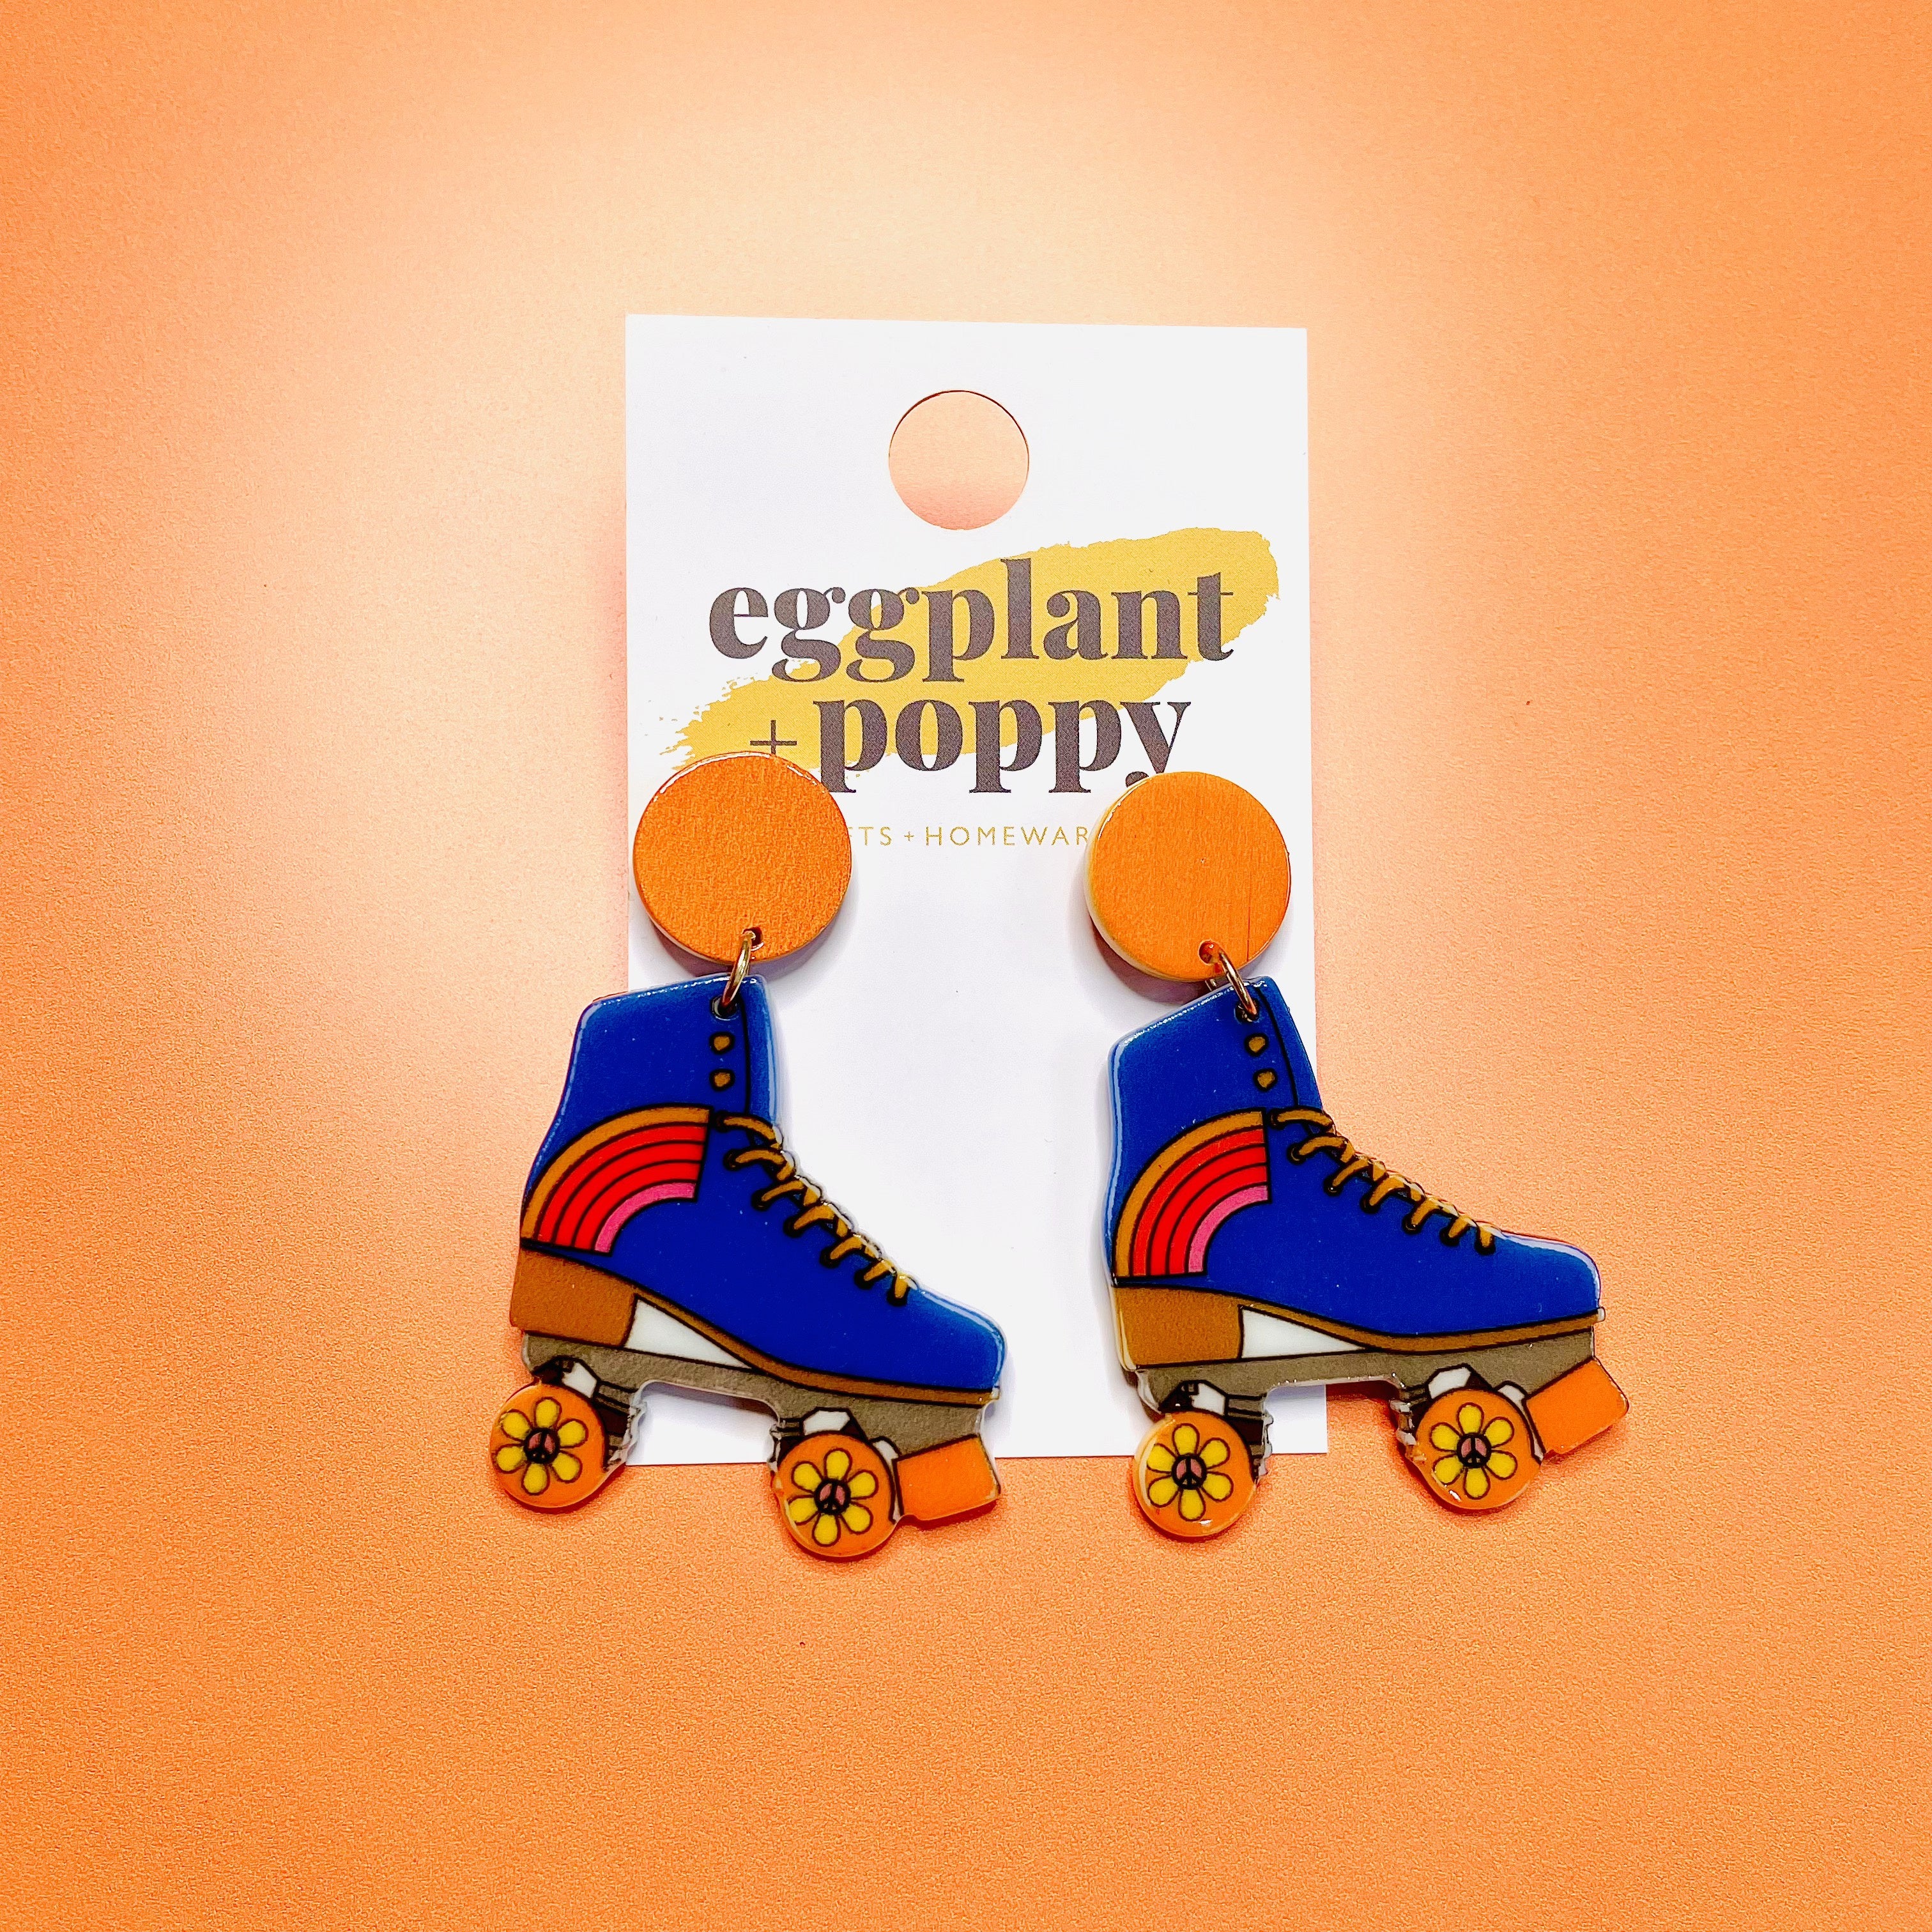 Retro Roller Skate Earrings